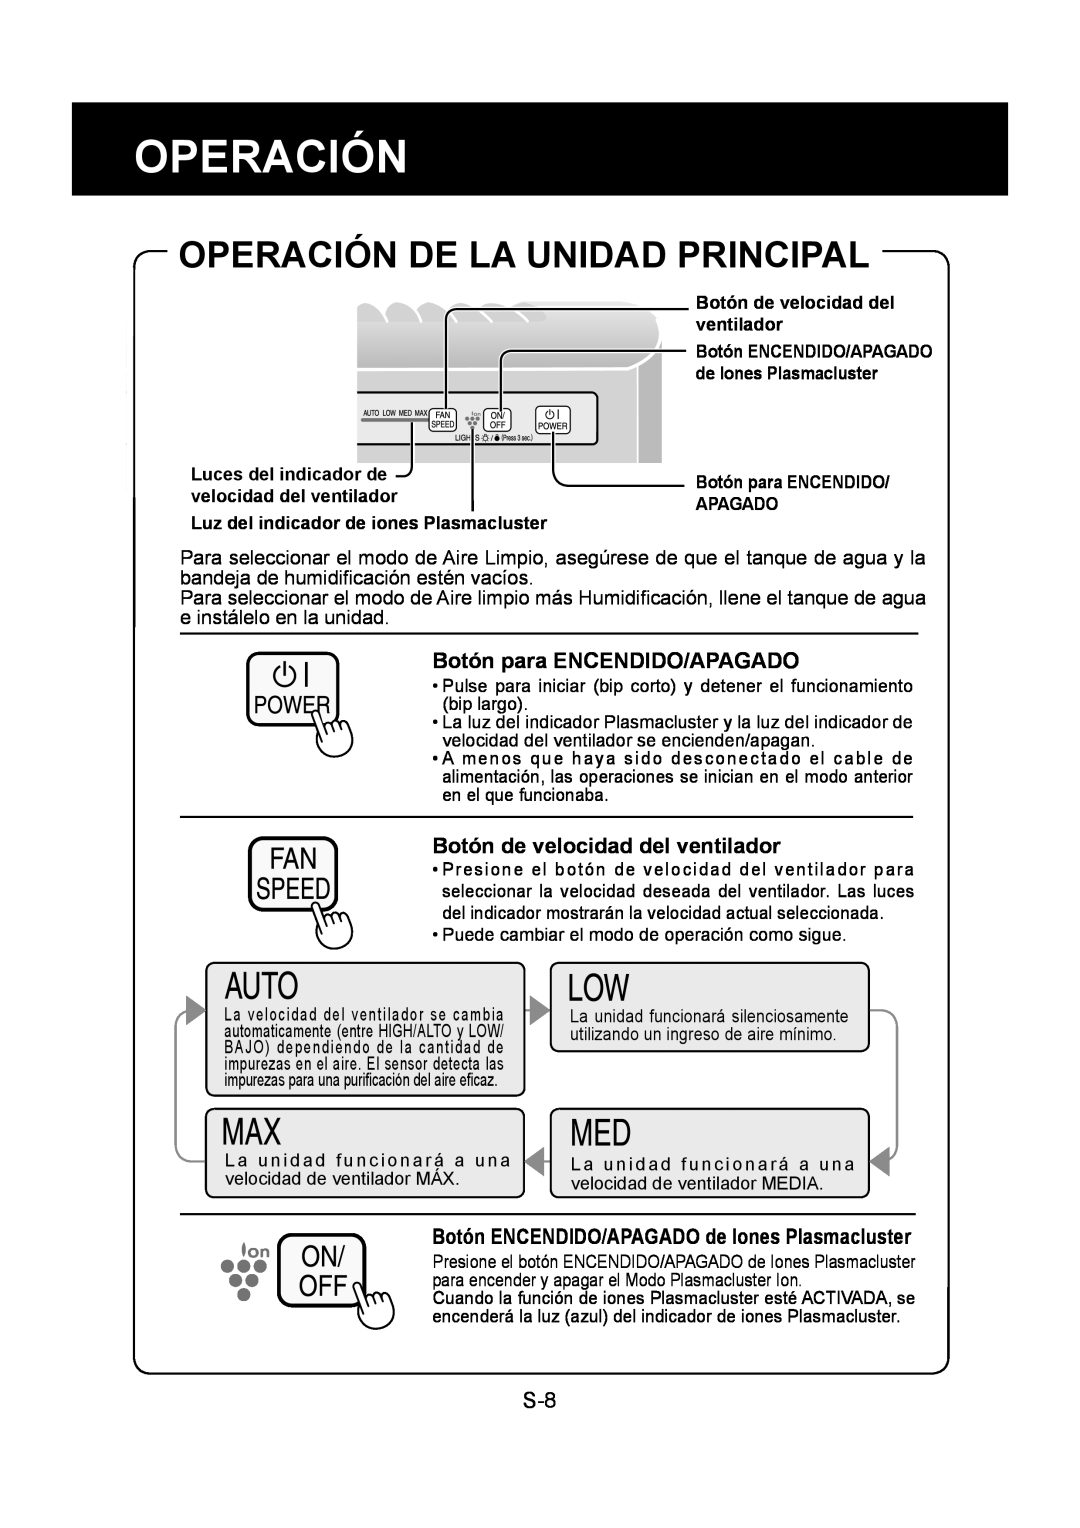 Sharp KC-830U operation manual Operación De La Unidad Principal 